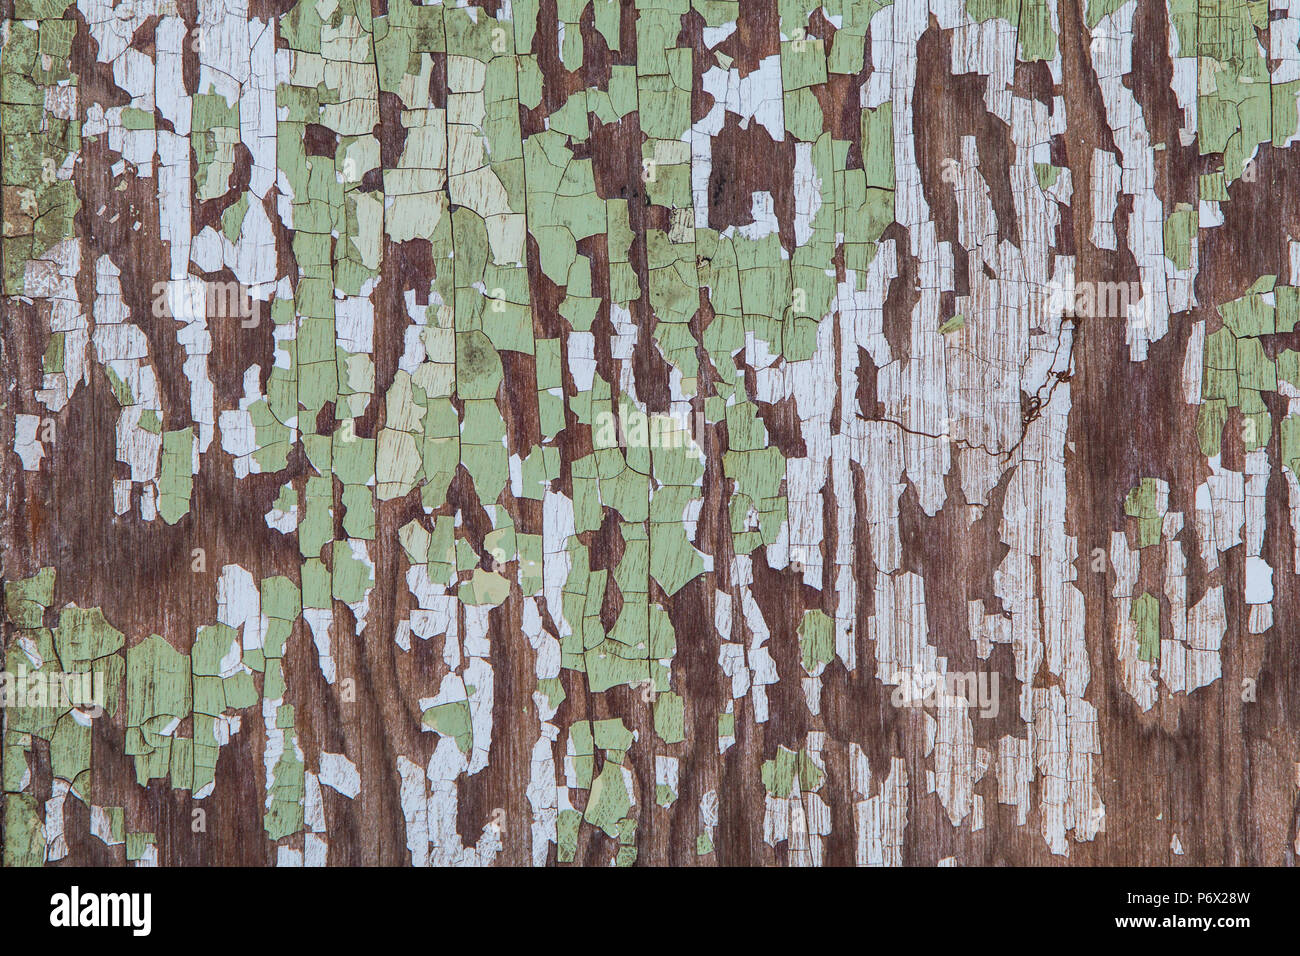 La texture de surface de meubles anciens en bois avec de la peinture verte, grattés fissurée. Banque D'Images